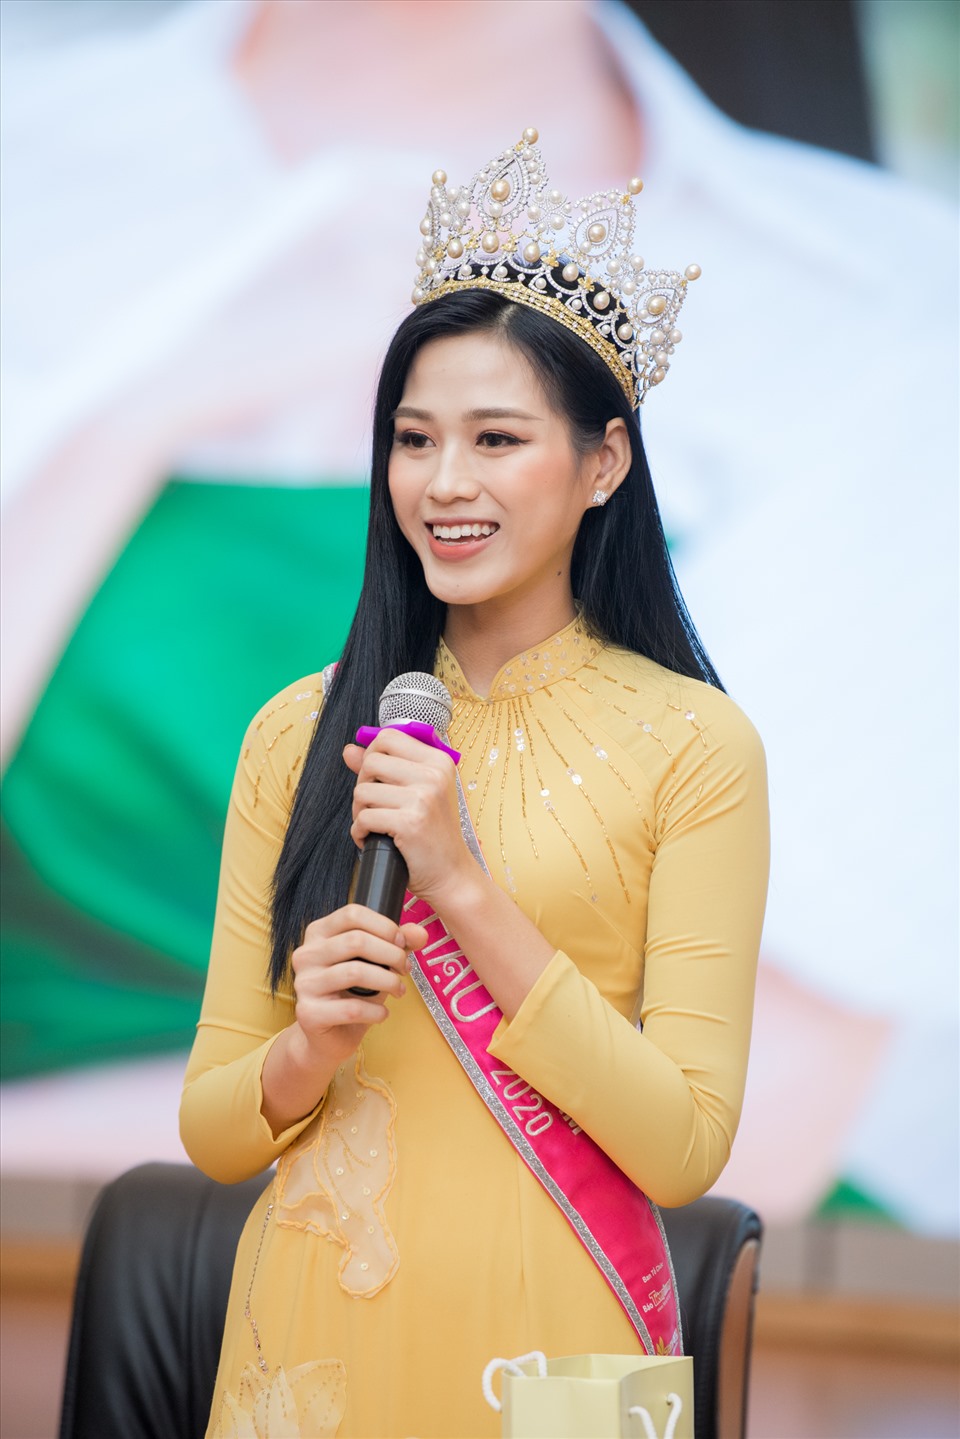 Hoa hậu Đỗ Thị Hà sẽ tiếp tục việc học tập tại trường Đại học Kinh tế Quốc dân. Ảnh: Vũ Toàn.